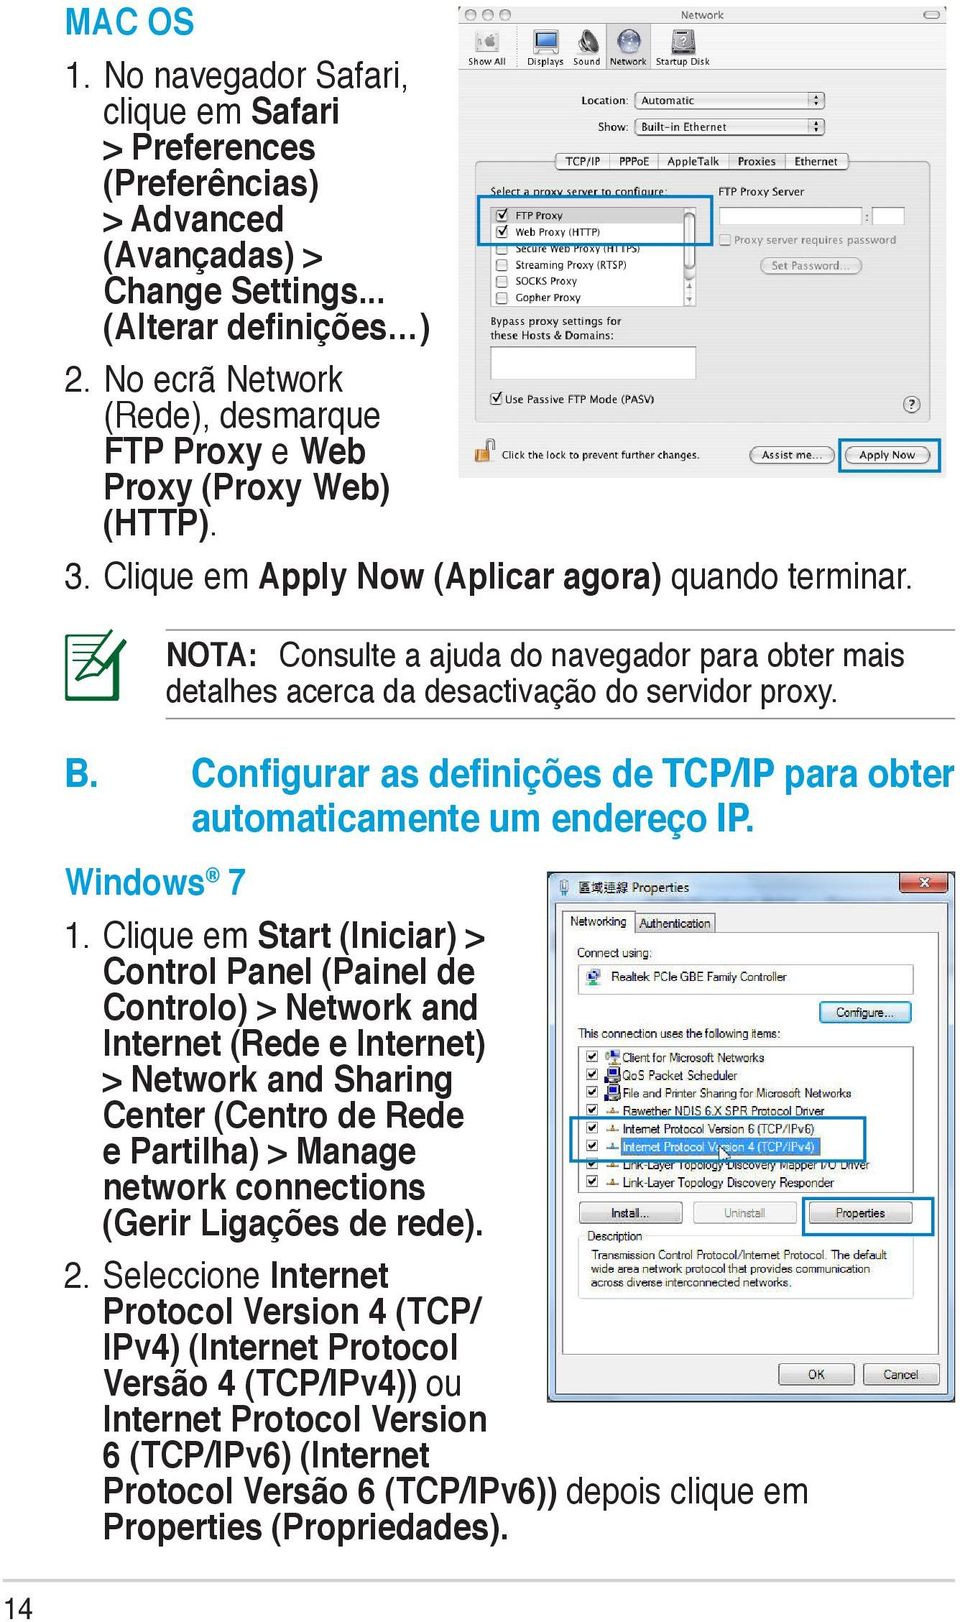 NOTA: Consulte a ajuda do navegador para obter mais detalhes acerca da desactivação do servidor proxy. B. Configurar as definições de TCP/IP para obter automaticamente um endereço IP. Windows 7 1.